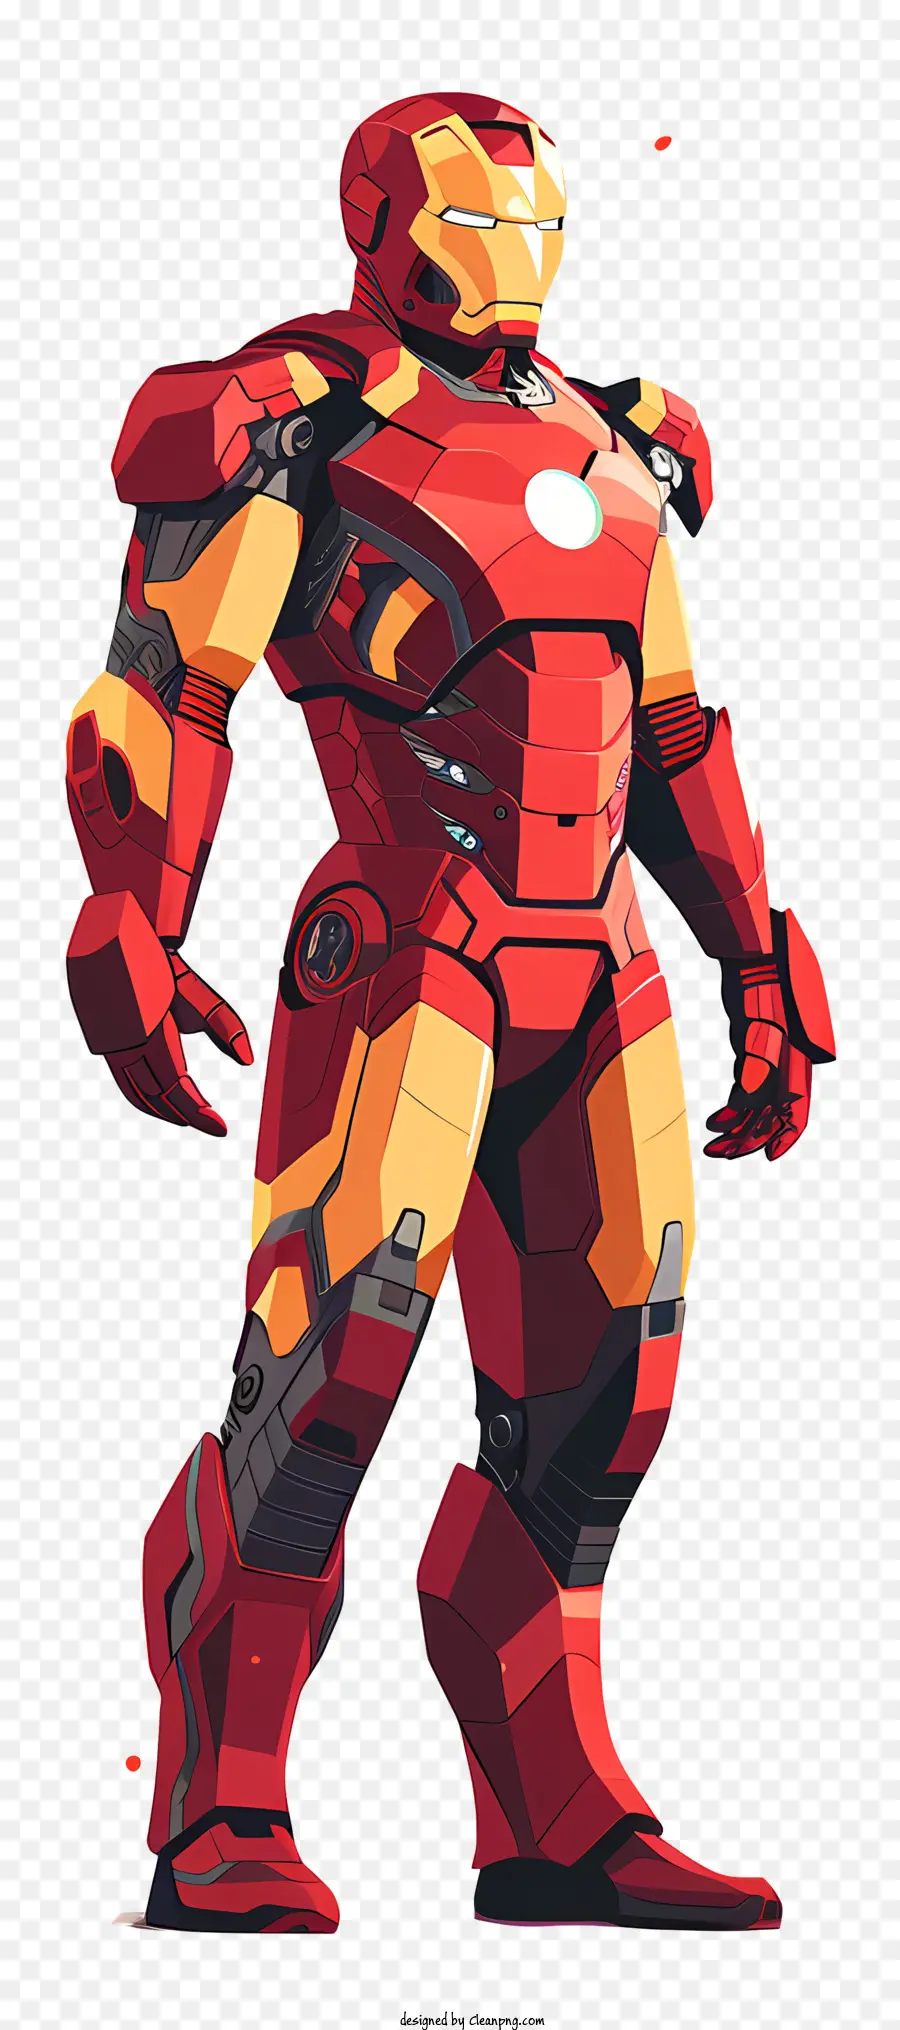 Iron Man - Iron Man, ein Superheld mit roter/goldener Rüstung